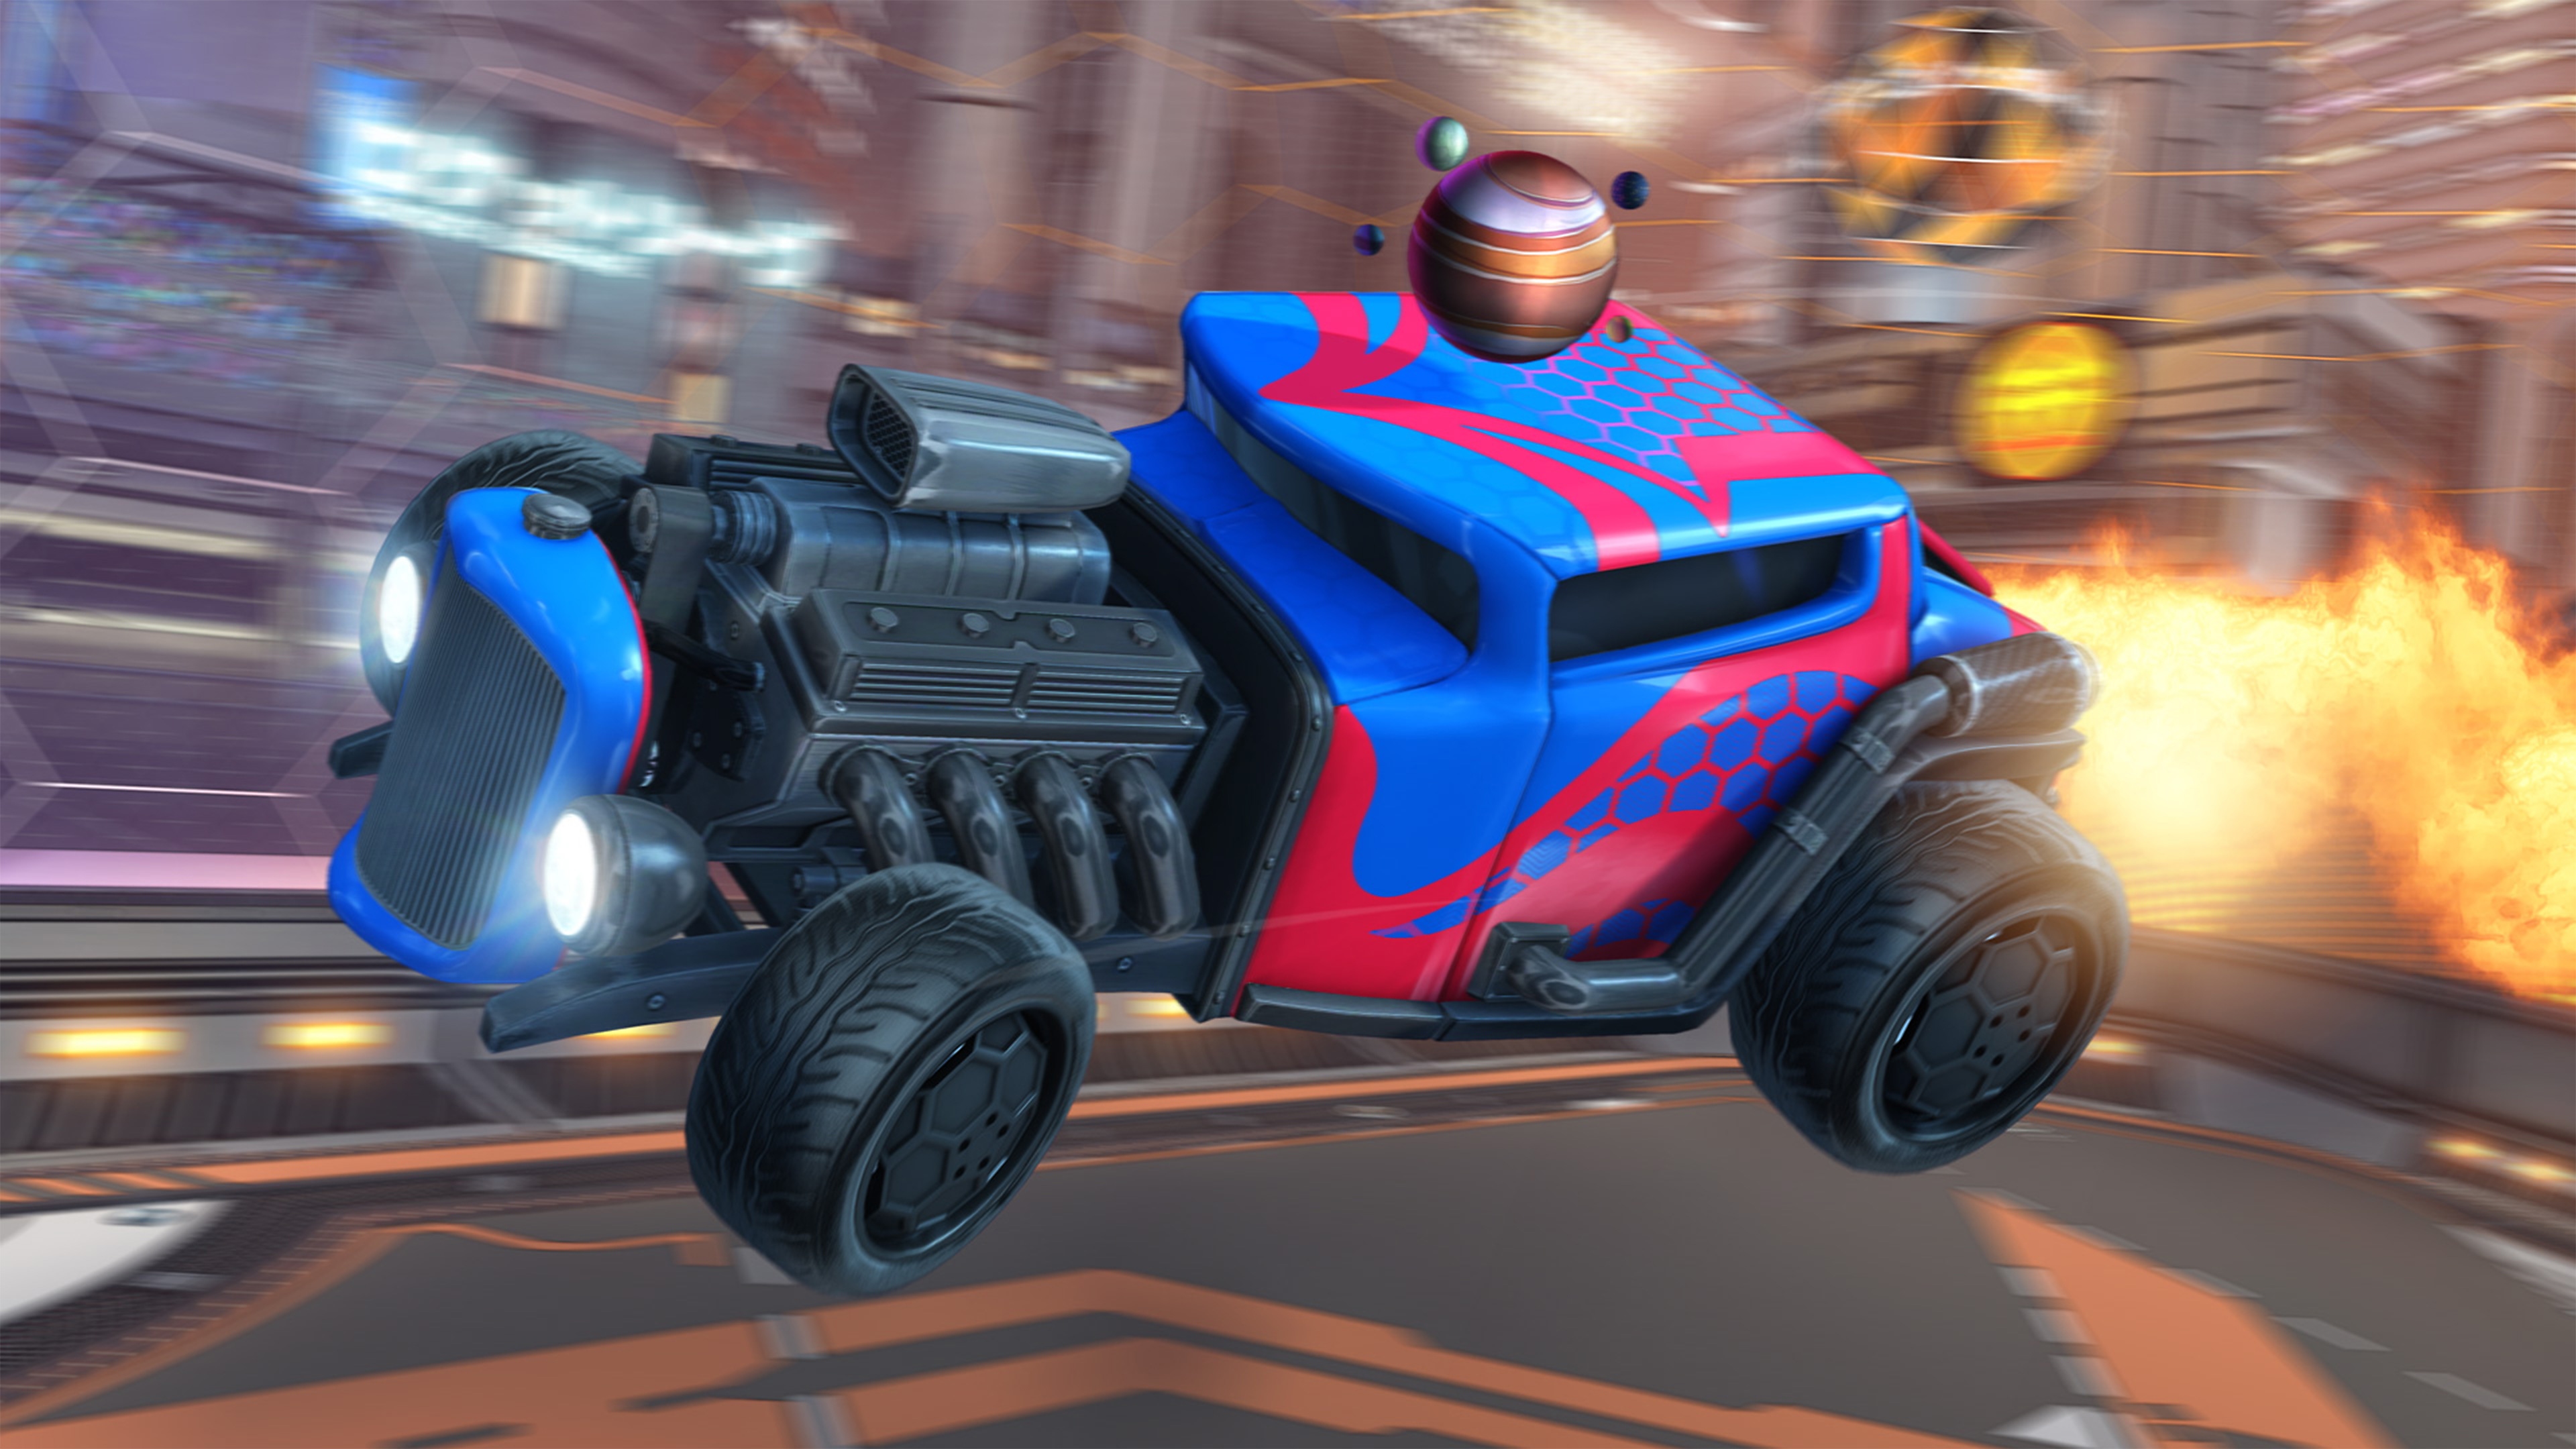 Rocket League - Istantanea della schermata che mostra un'auto sportiva con motore a vista e vernice rossa e blu